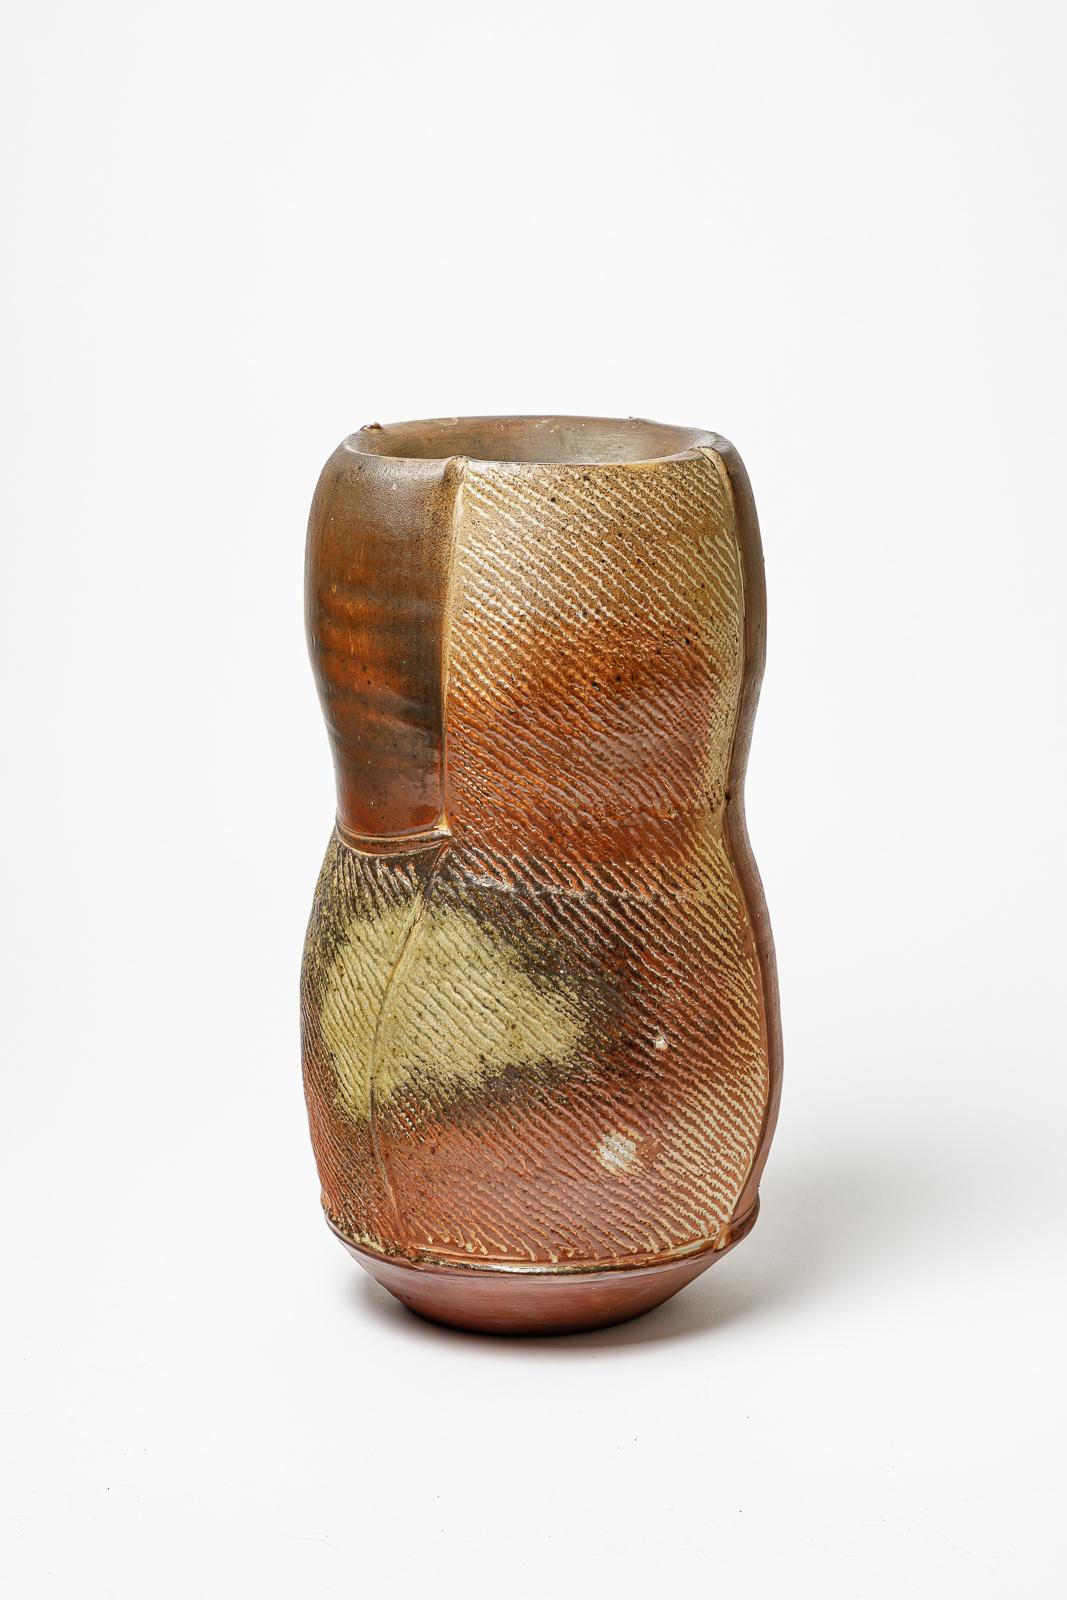 Vase aus holzgebrannter Keramik von Eric Astoul.
Künstlermonogramm unter dem Sockel. Circa 1990.
H: 15,7' x 7,5' x 6,7' Zoll.